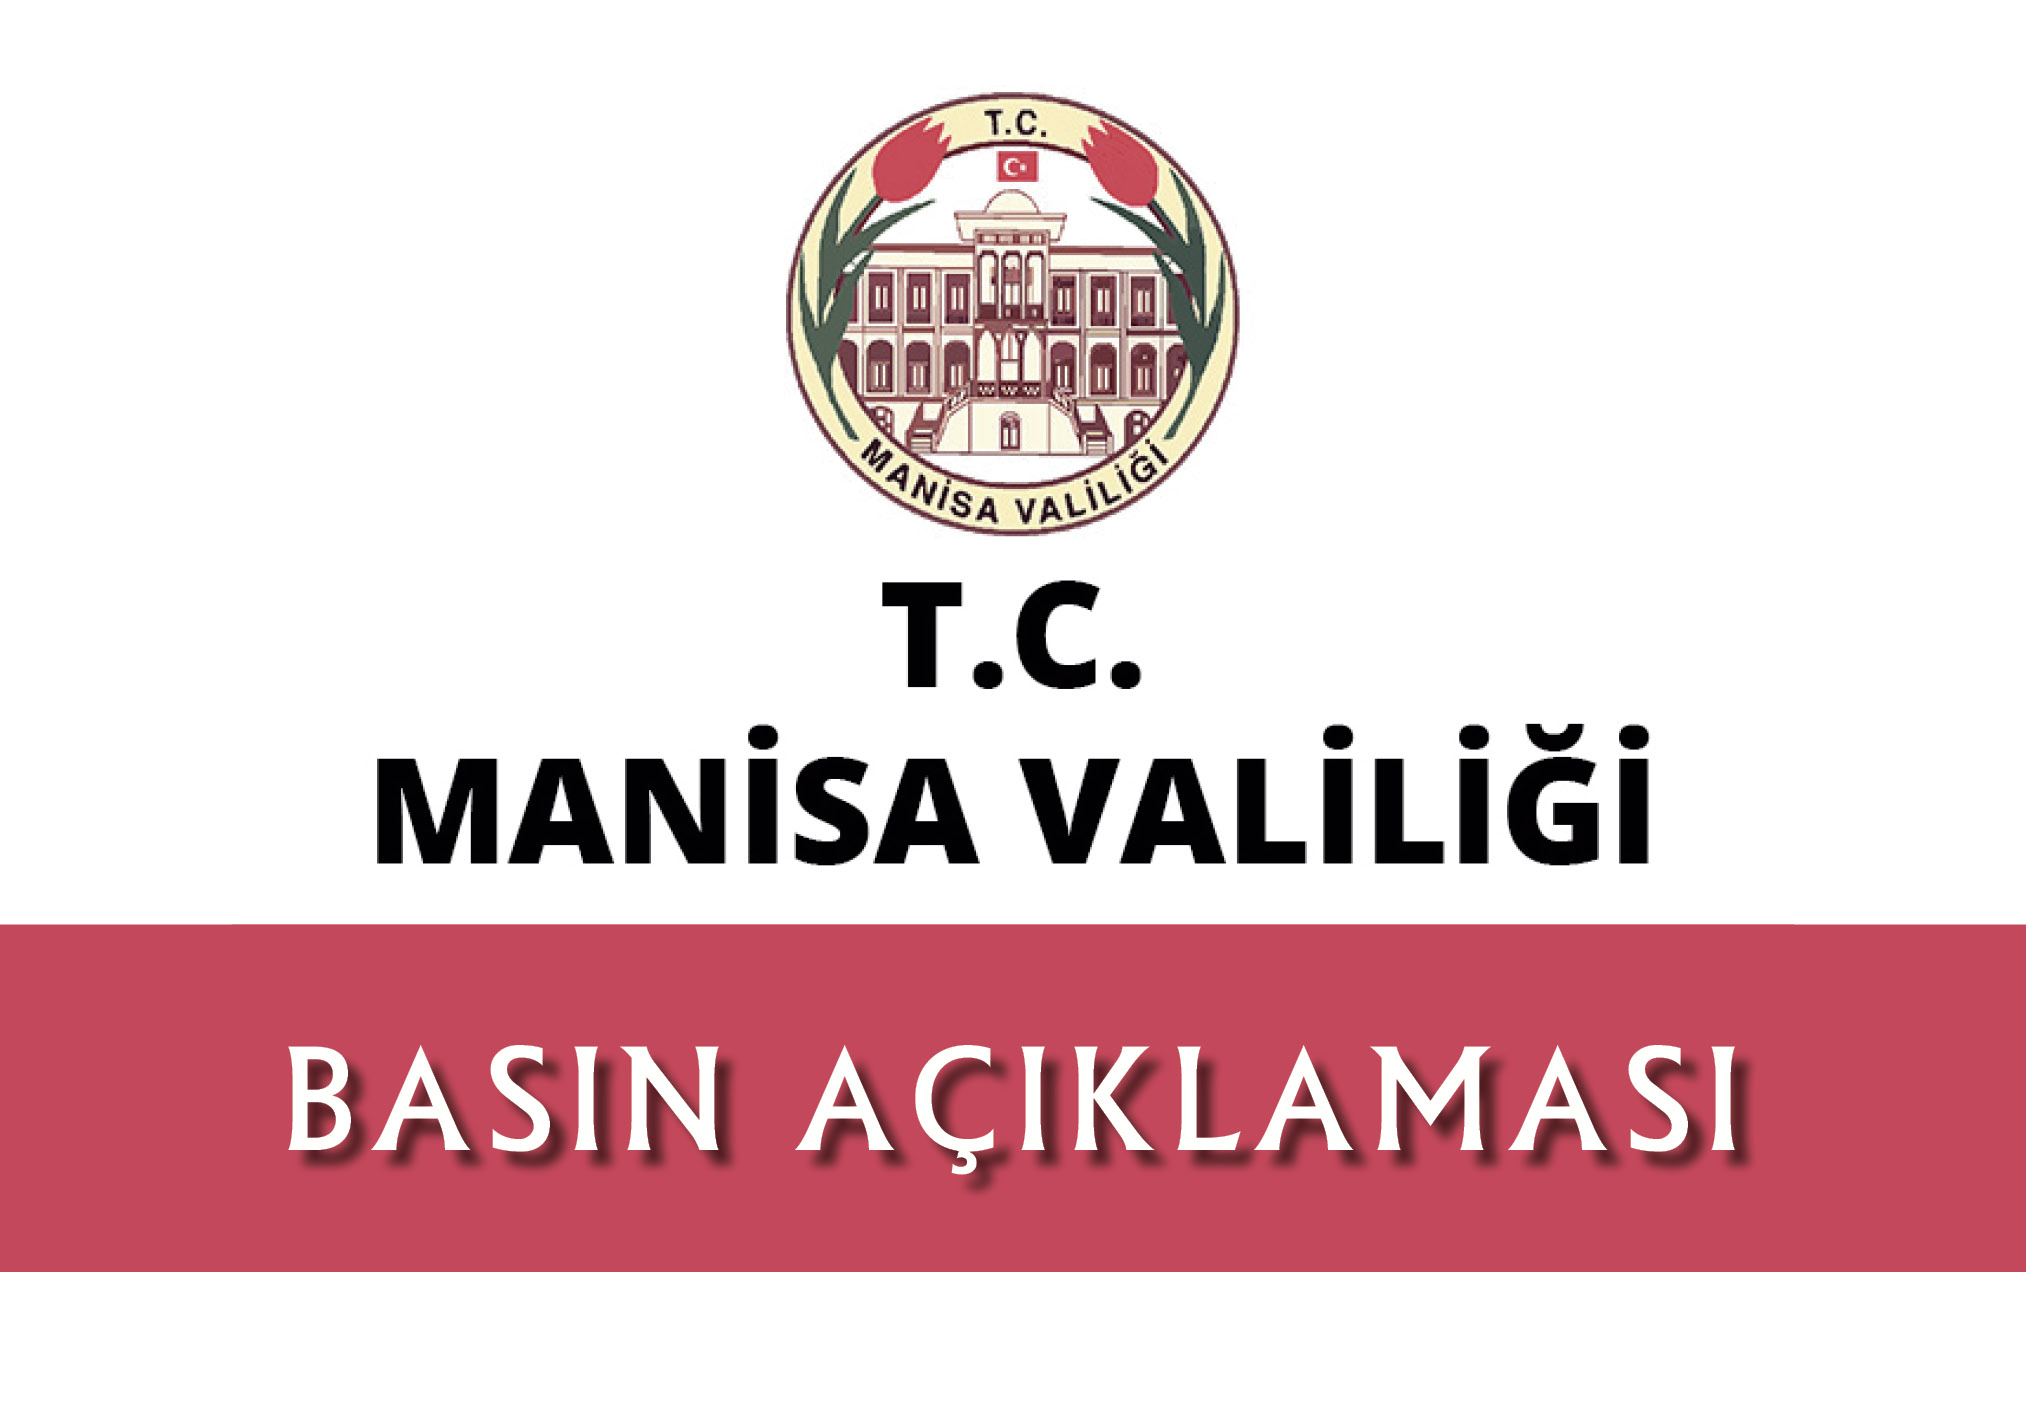 T.C.MANSA VALL'nden BASIN AIKLAMASI